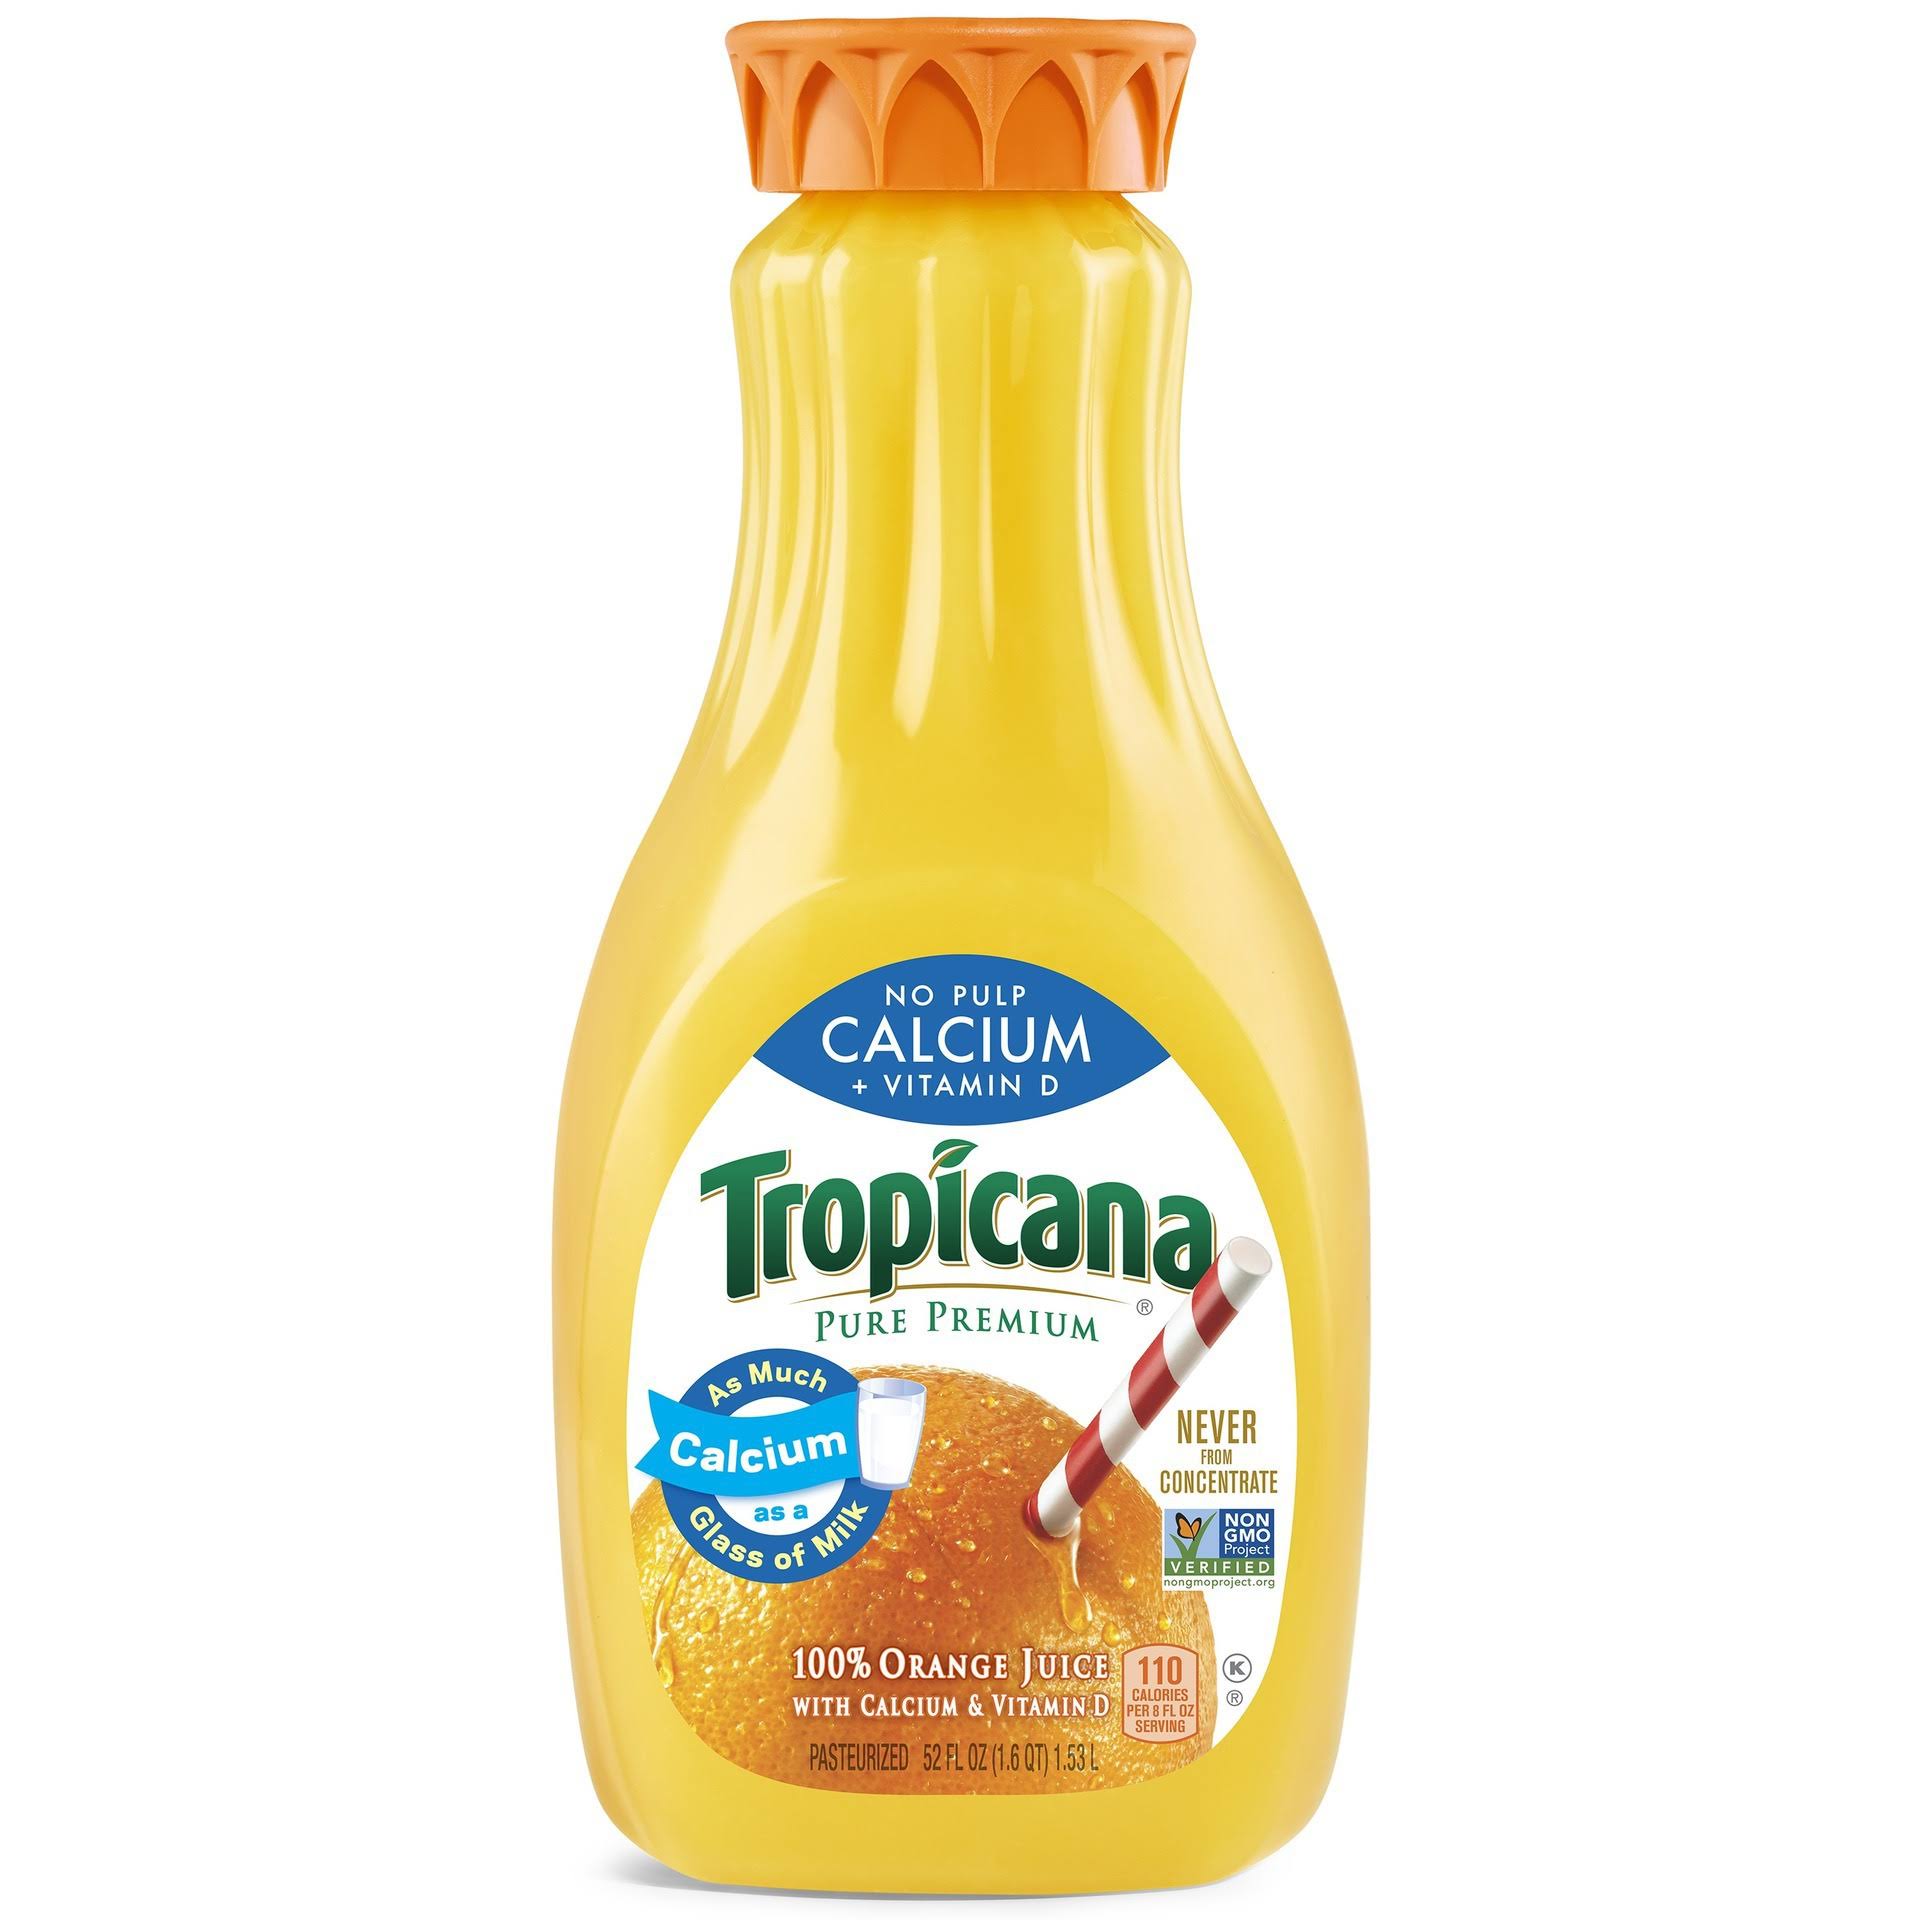 Tropicana Orange Juice, Calcium + Vitamin D, No Pulp - 52 fl oz